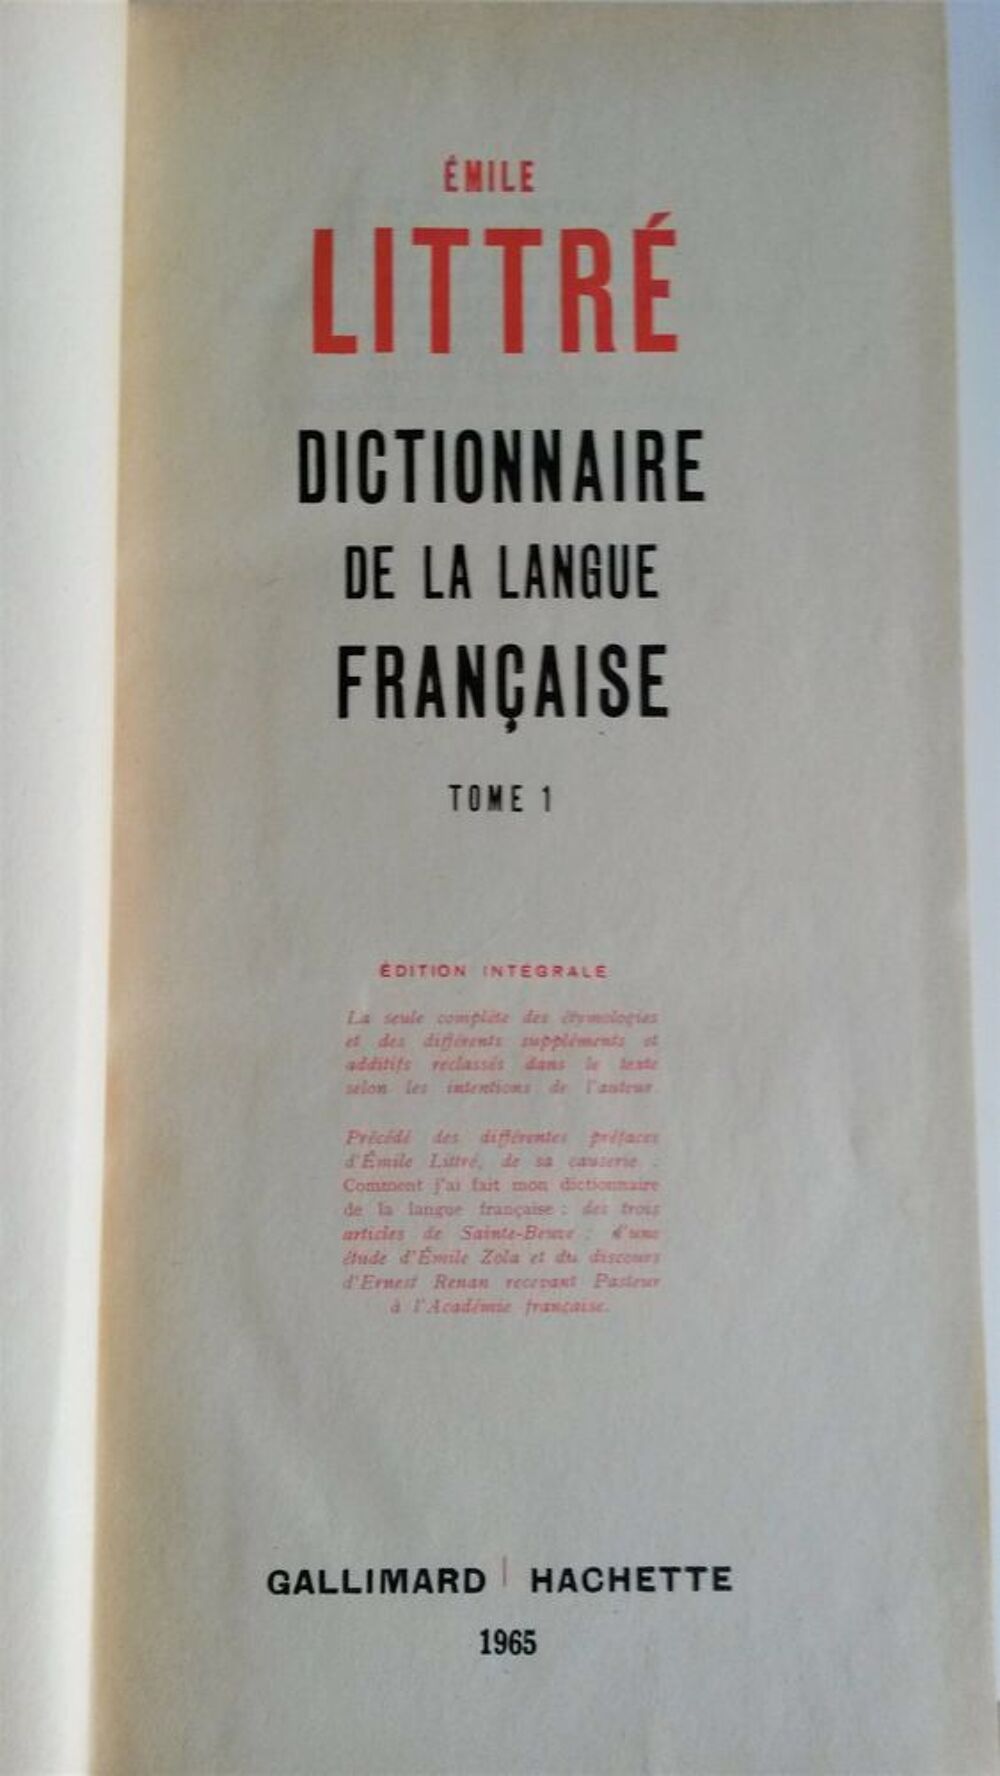 Dictionnaire des additifs